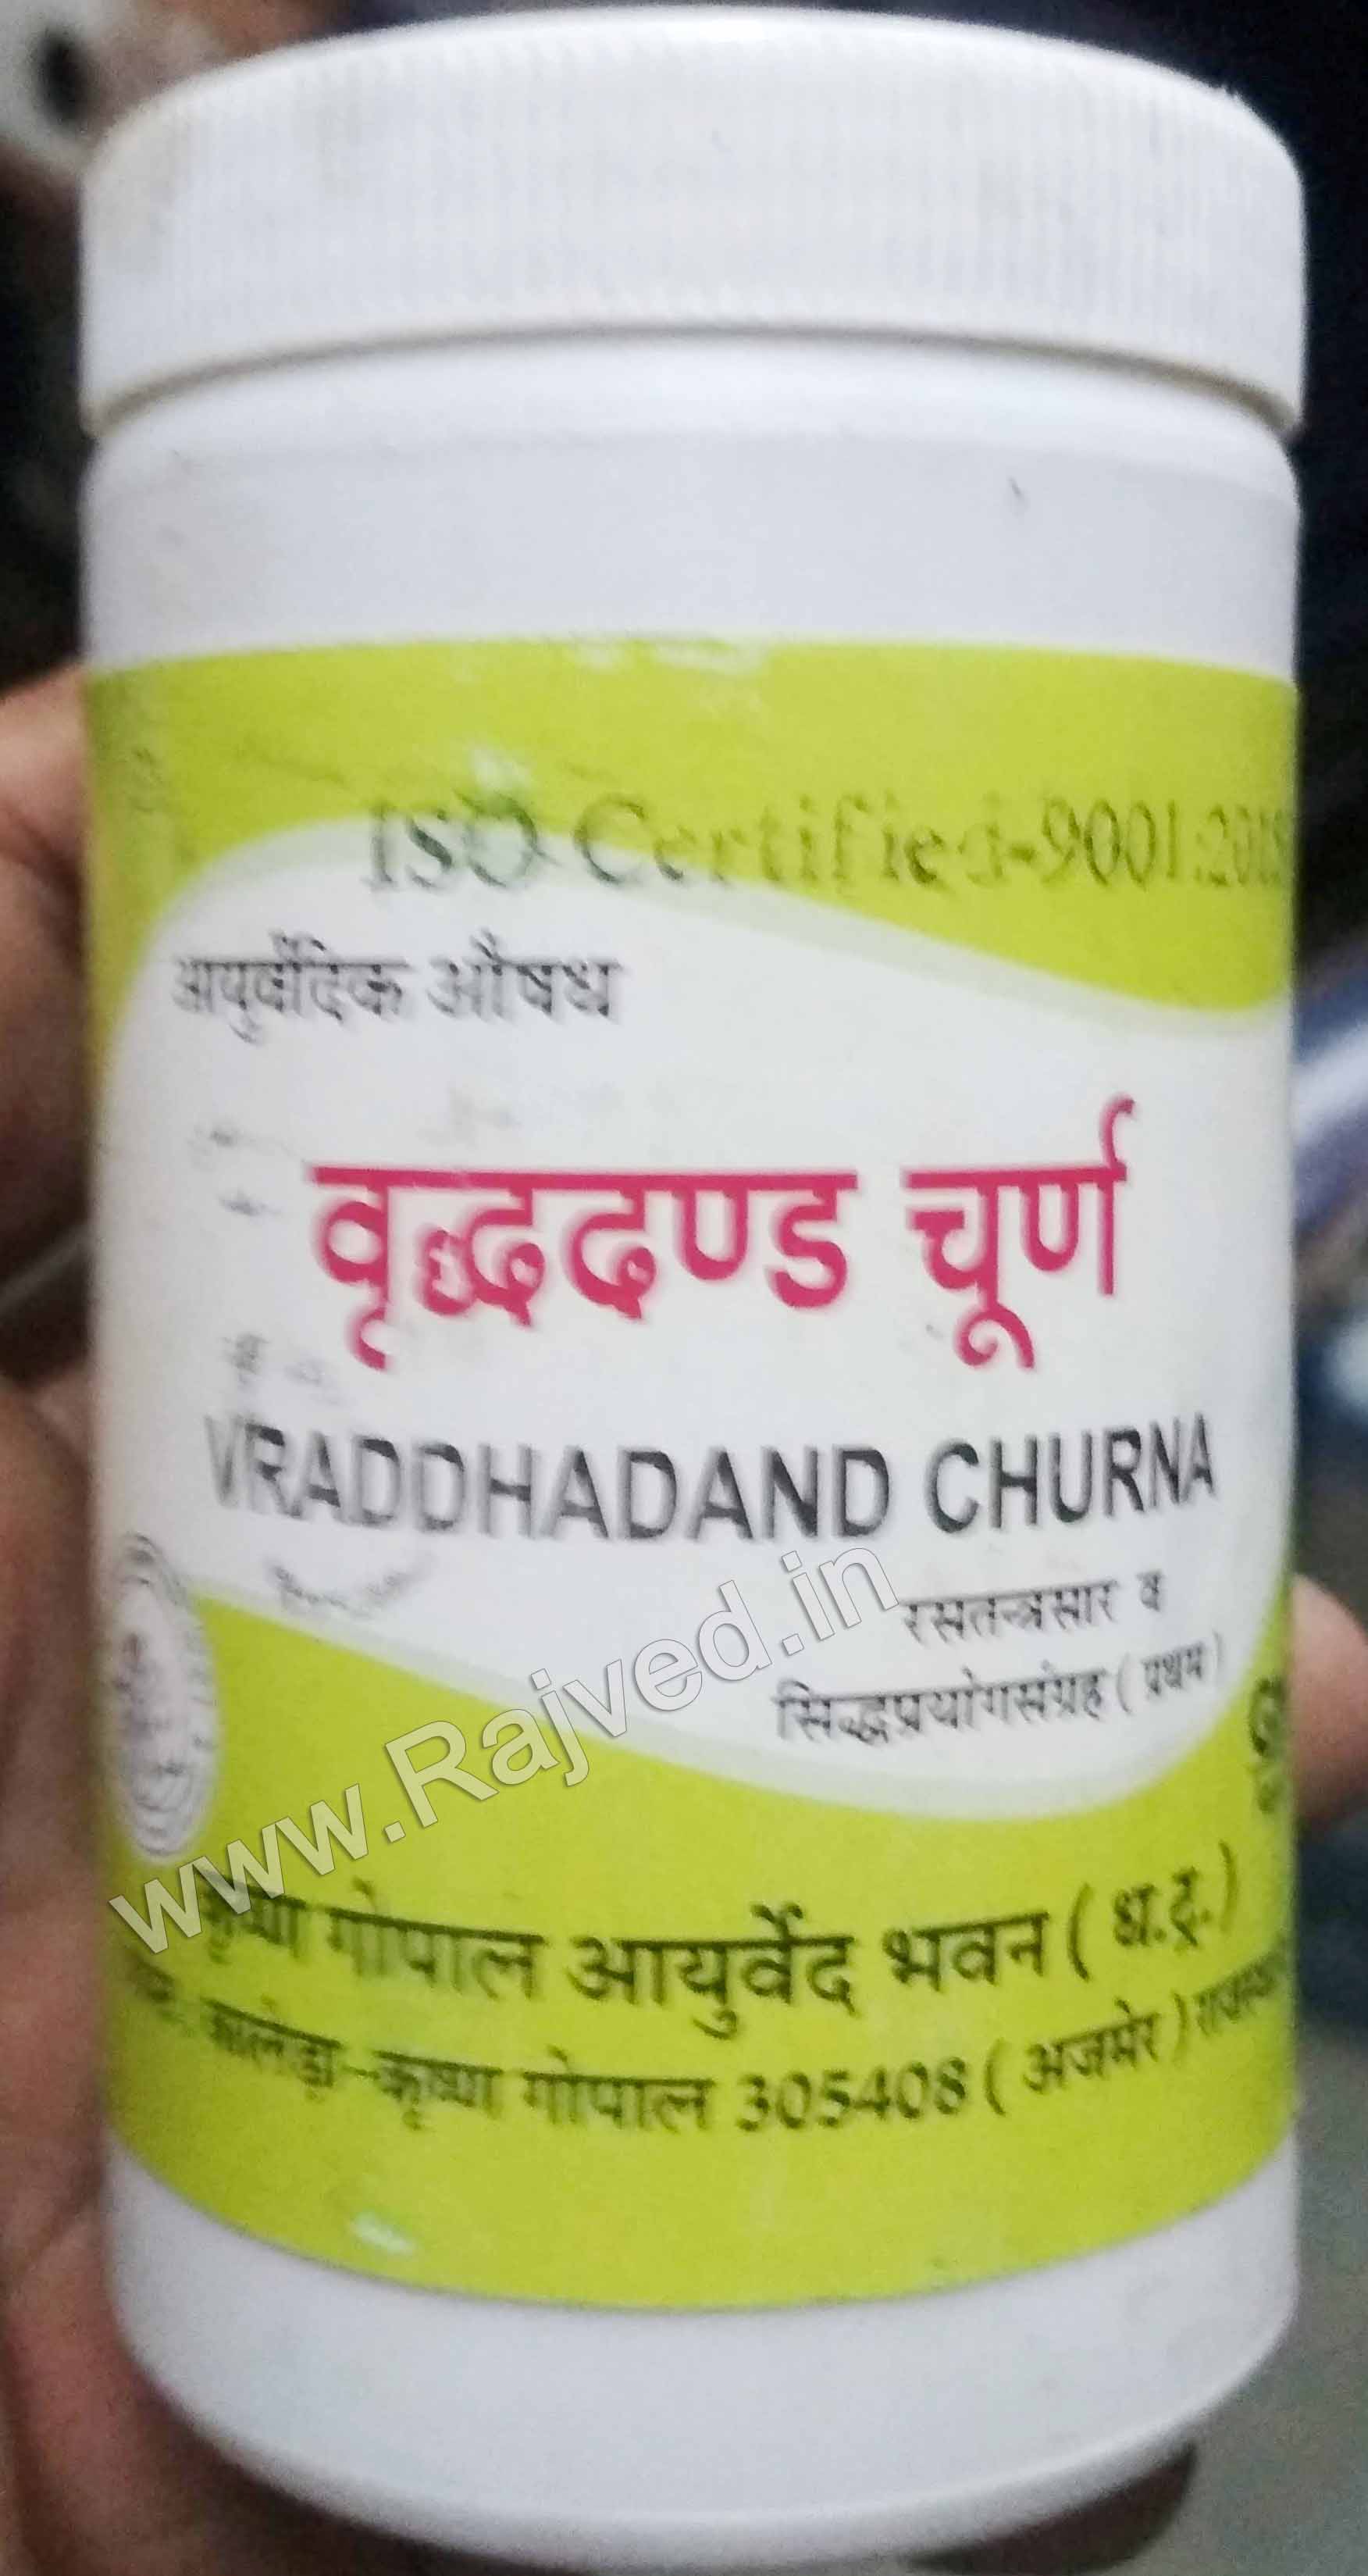 vraddhadand churna 100gm upto 20% off krishna gopal ayurved bhavan